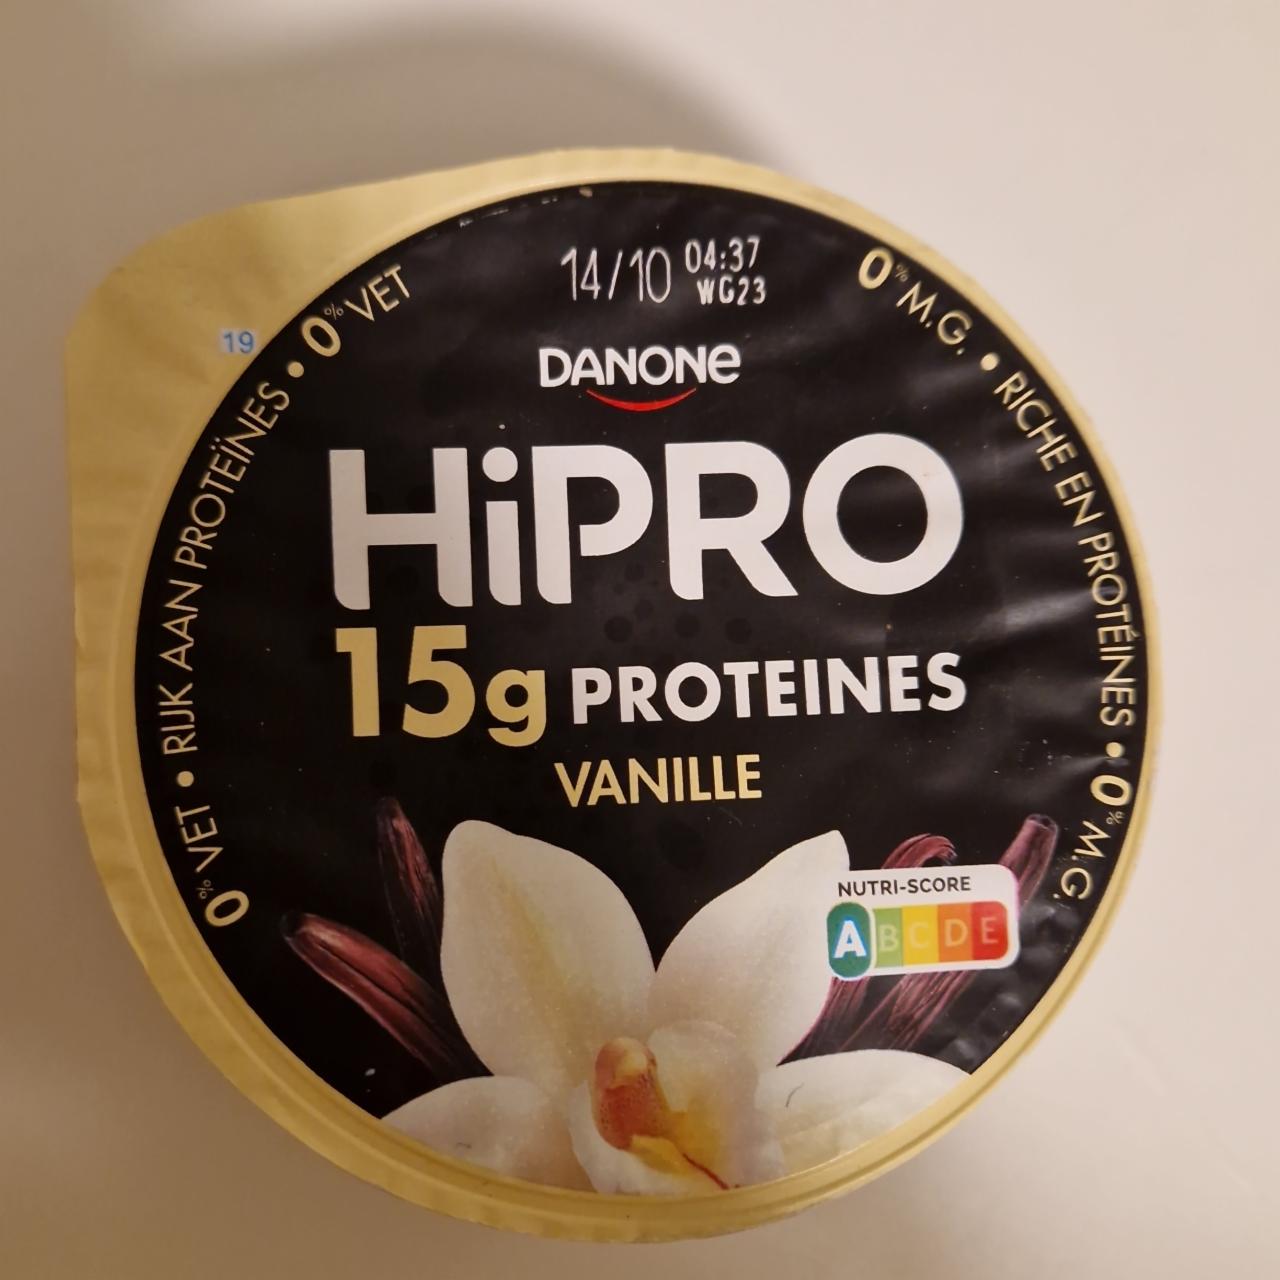 Fotografie - HiPro 15g proteines vanilla flavour Danone